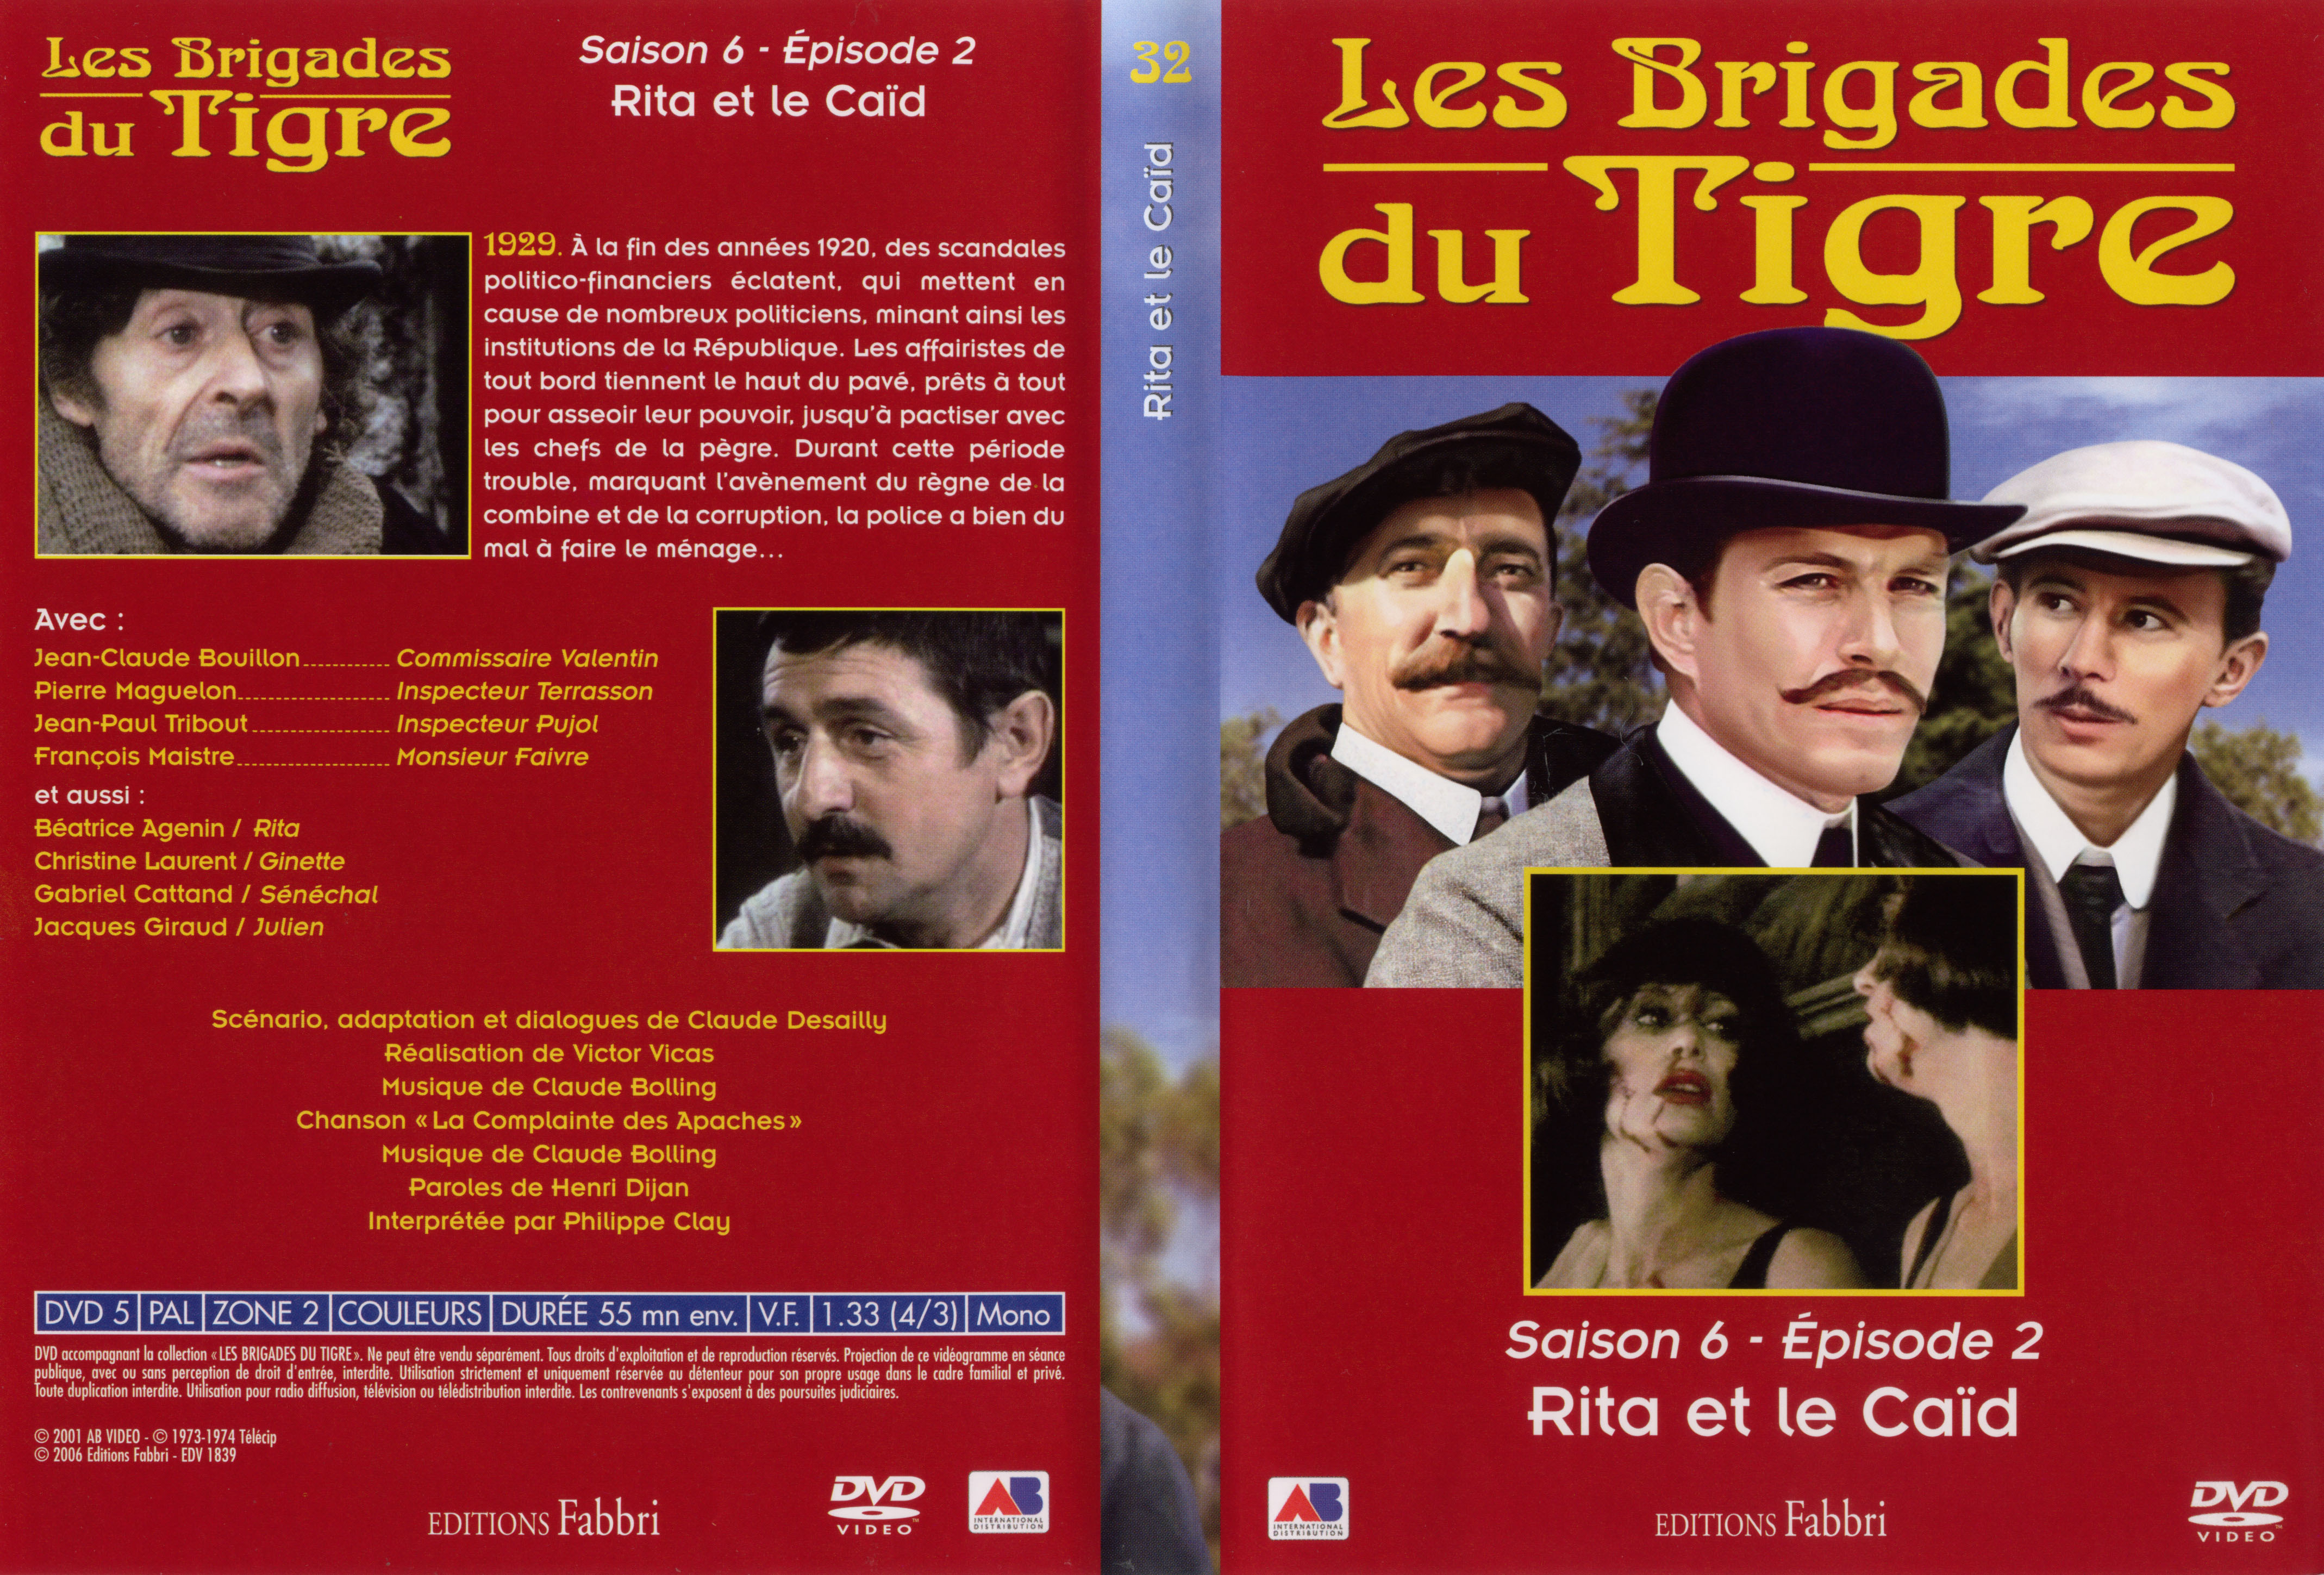 Jaquette DVD Les brigades du tigre saison 6 pisode 2